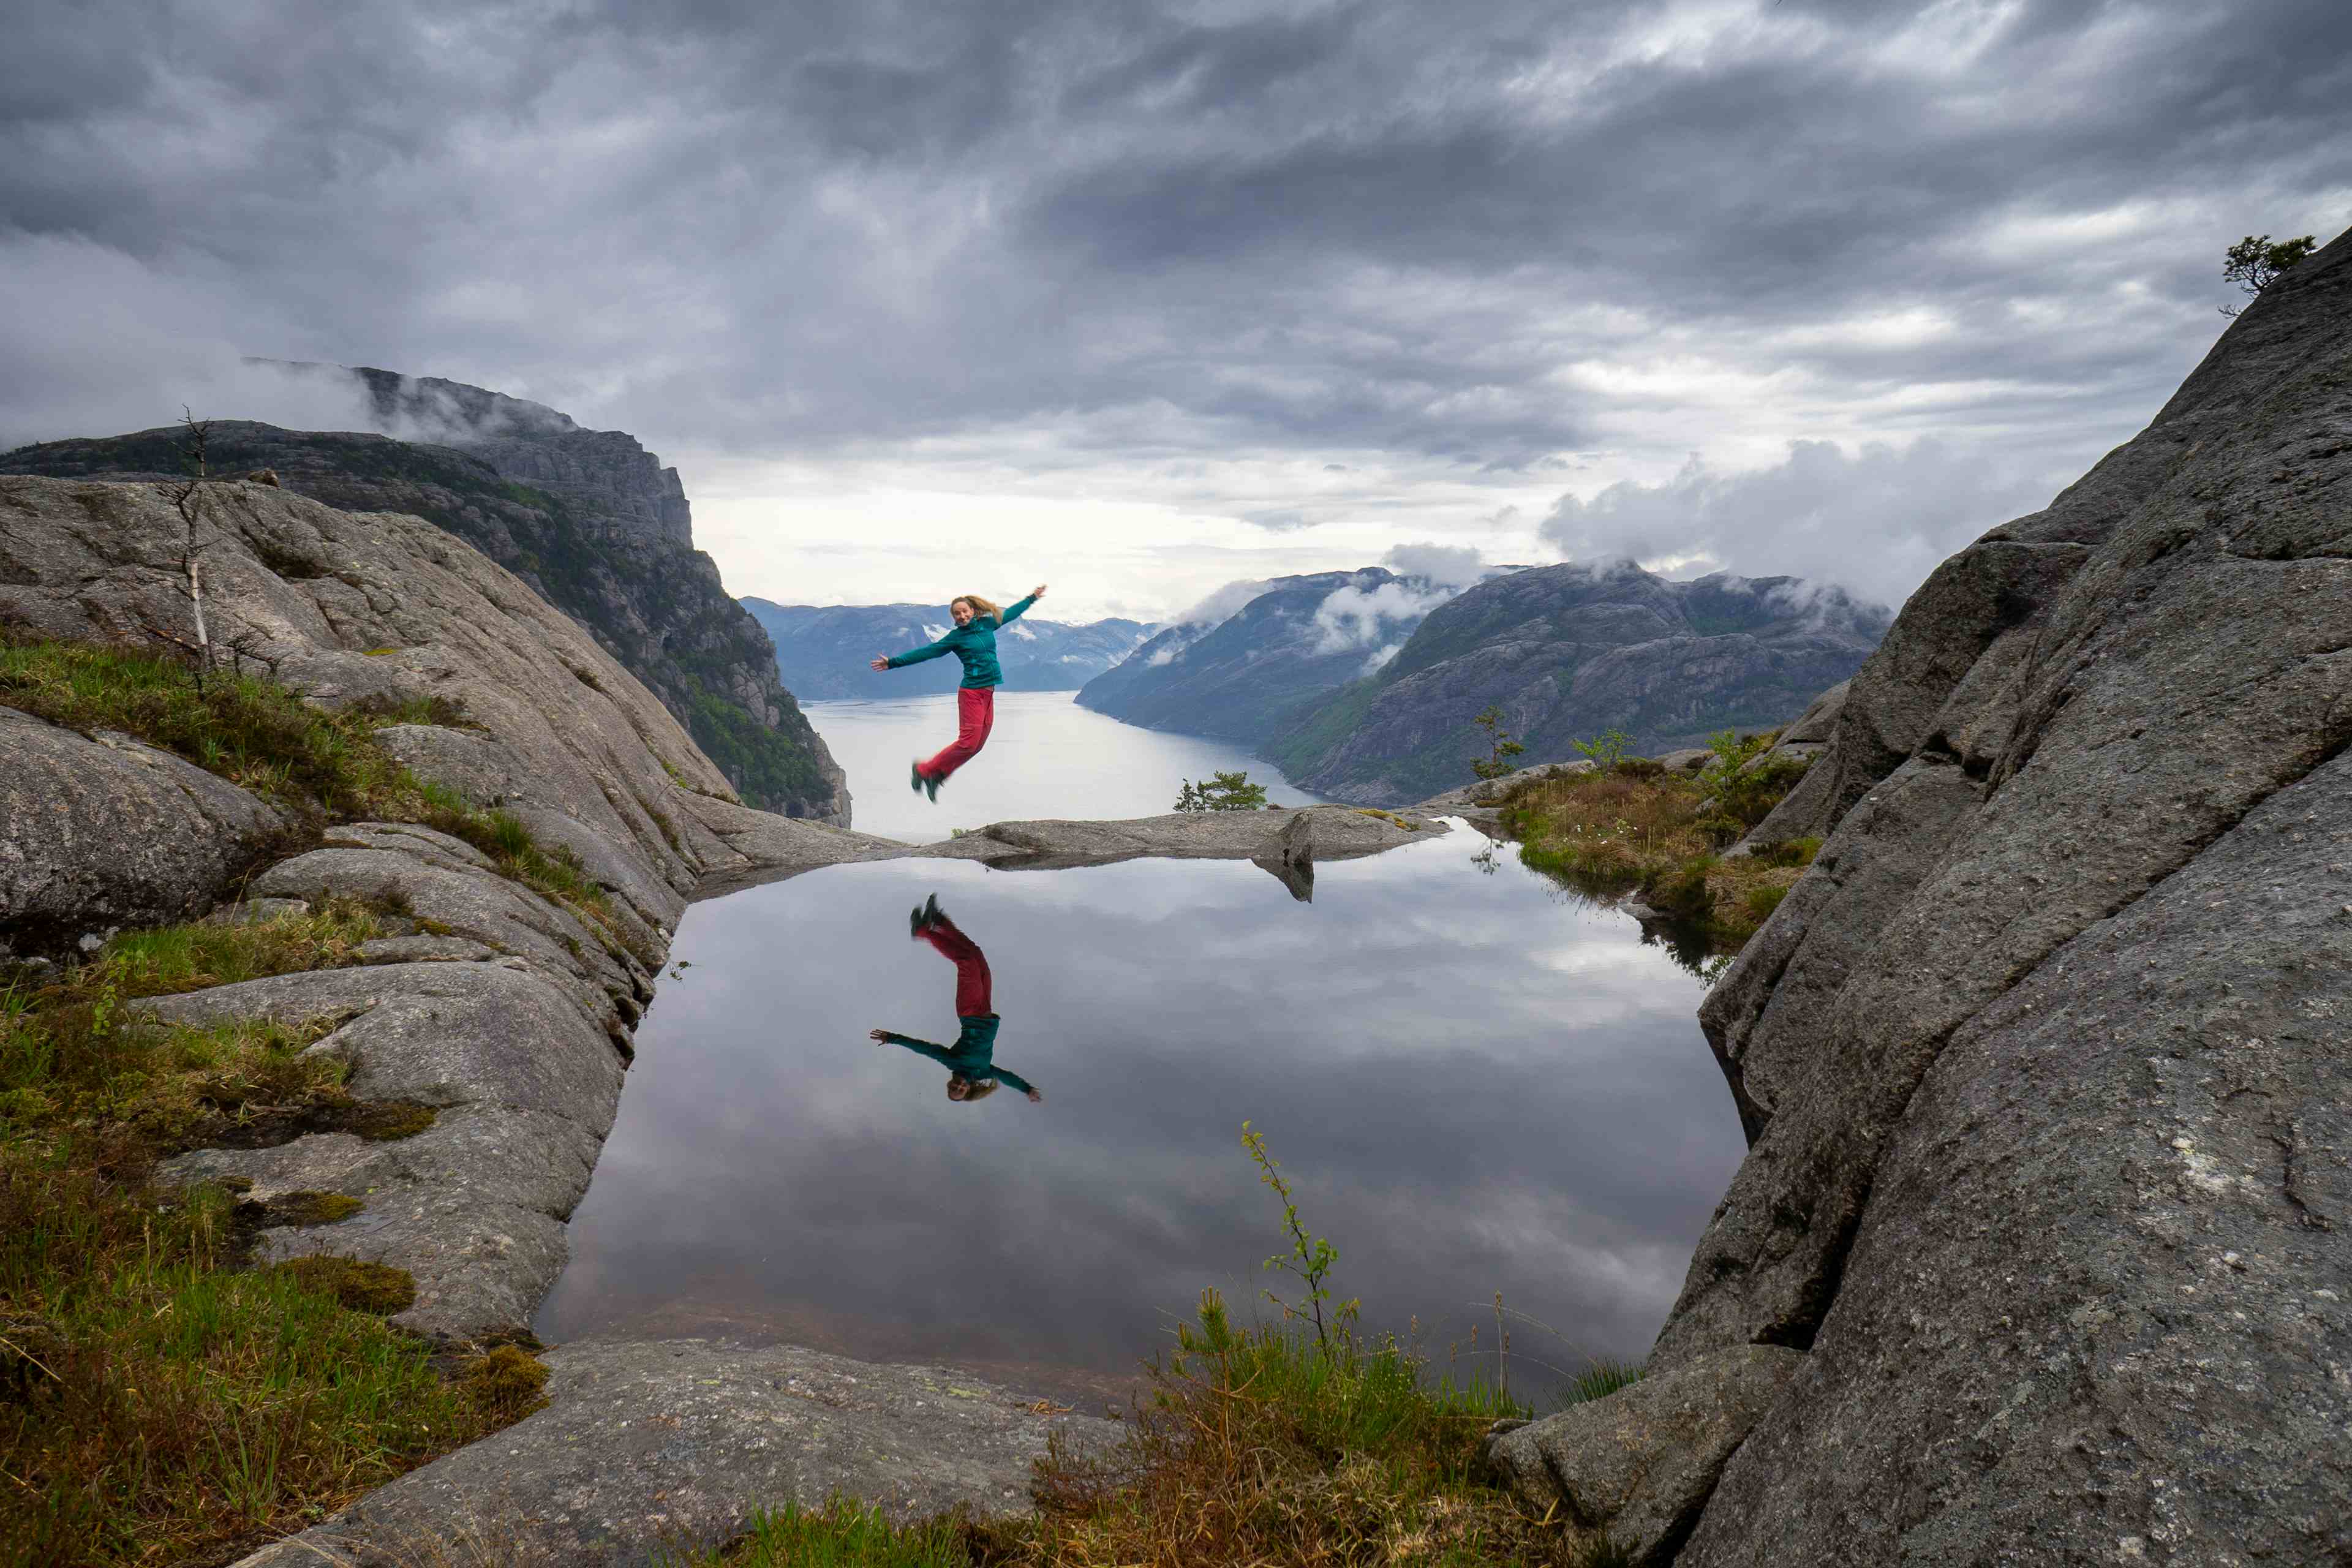 A woman jumping at Fantapytten.